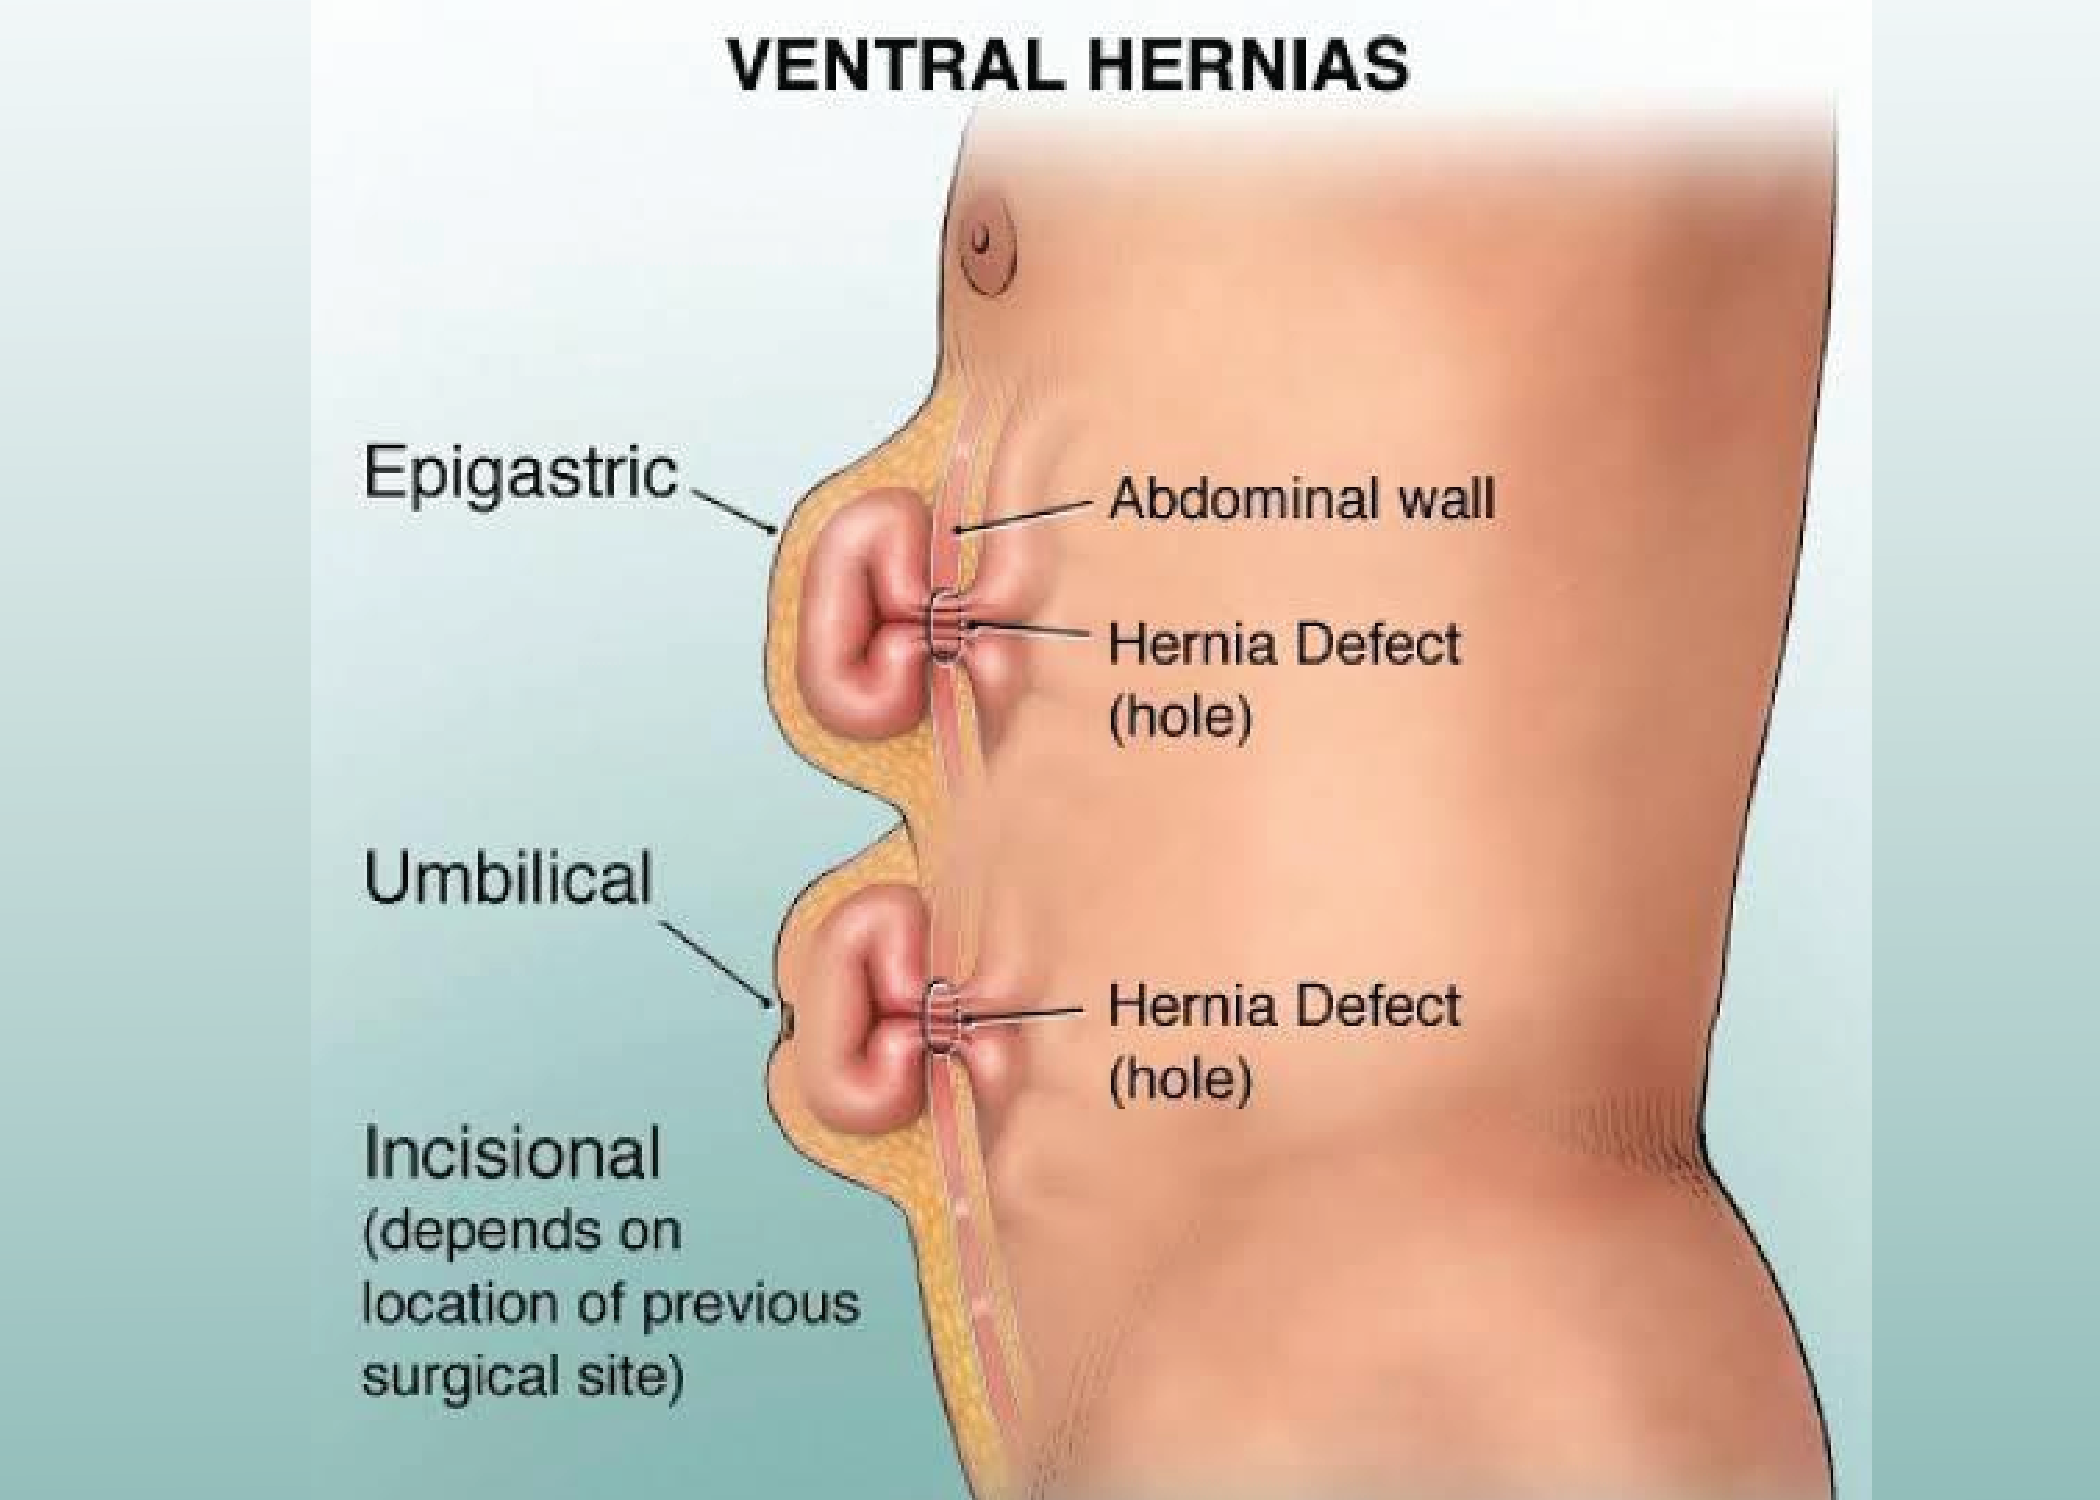 Ventral hernia